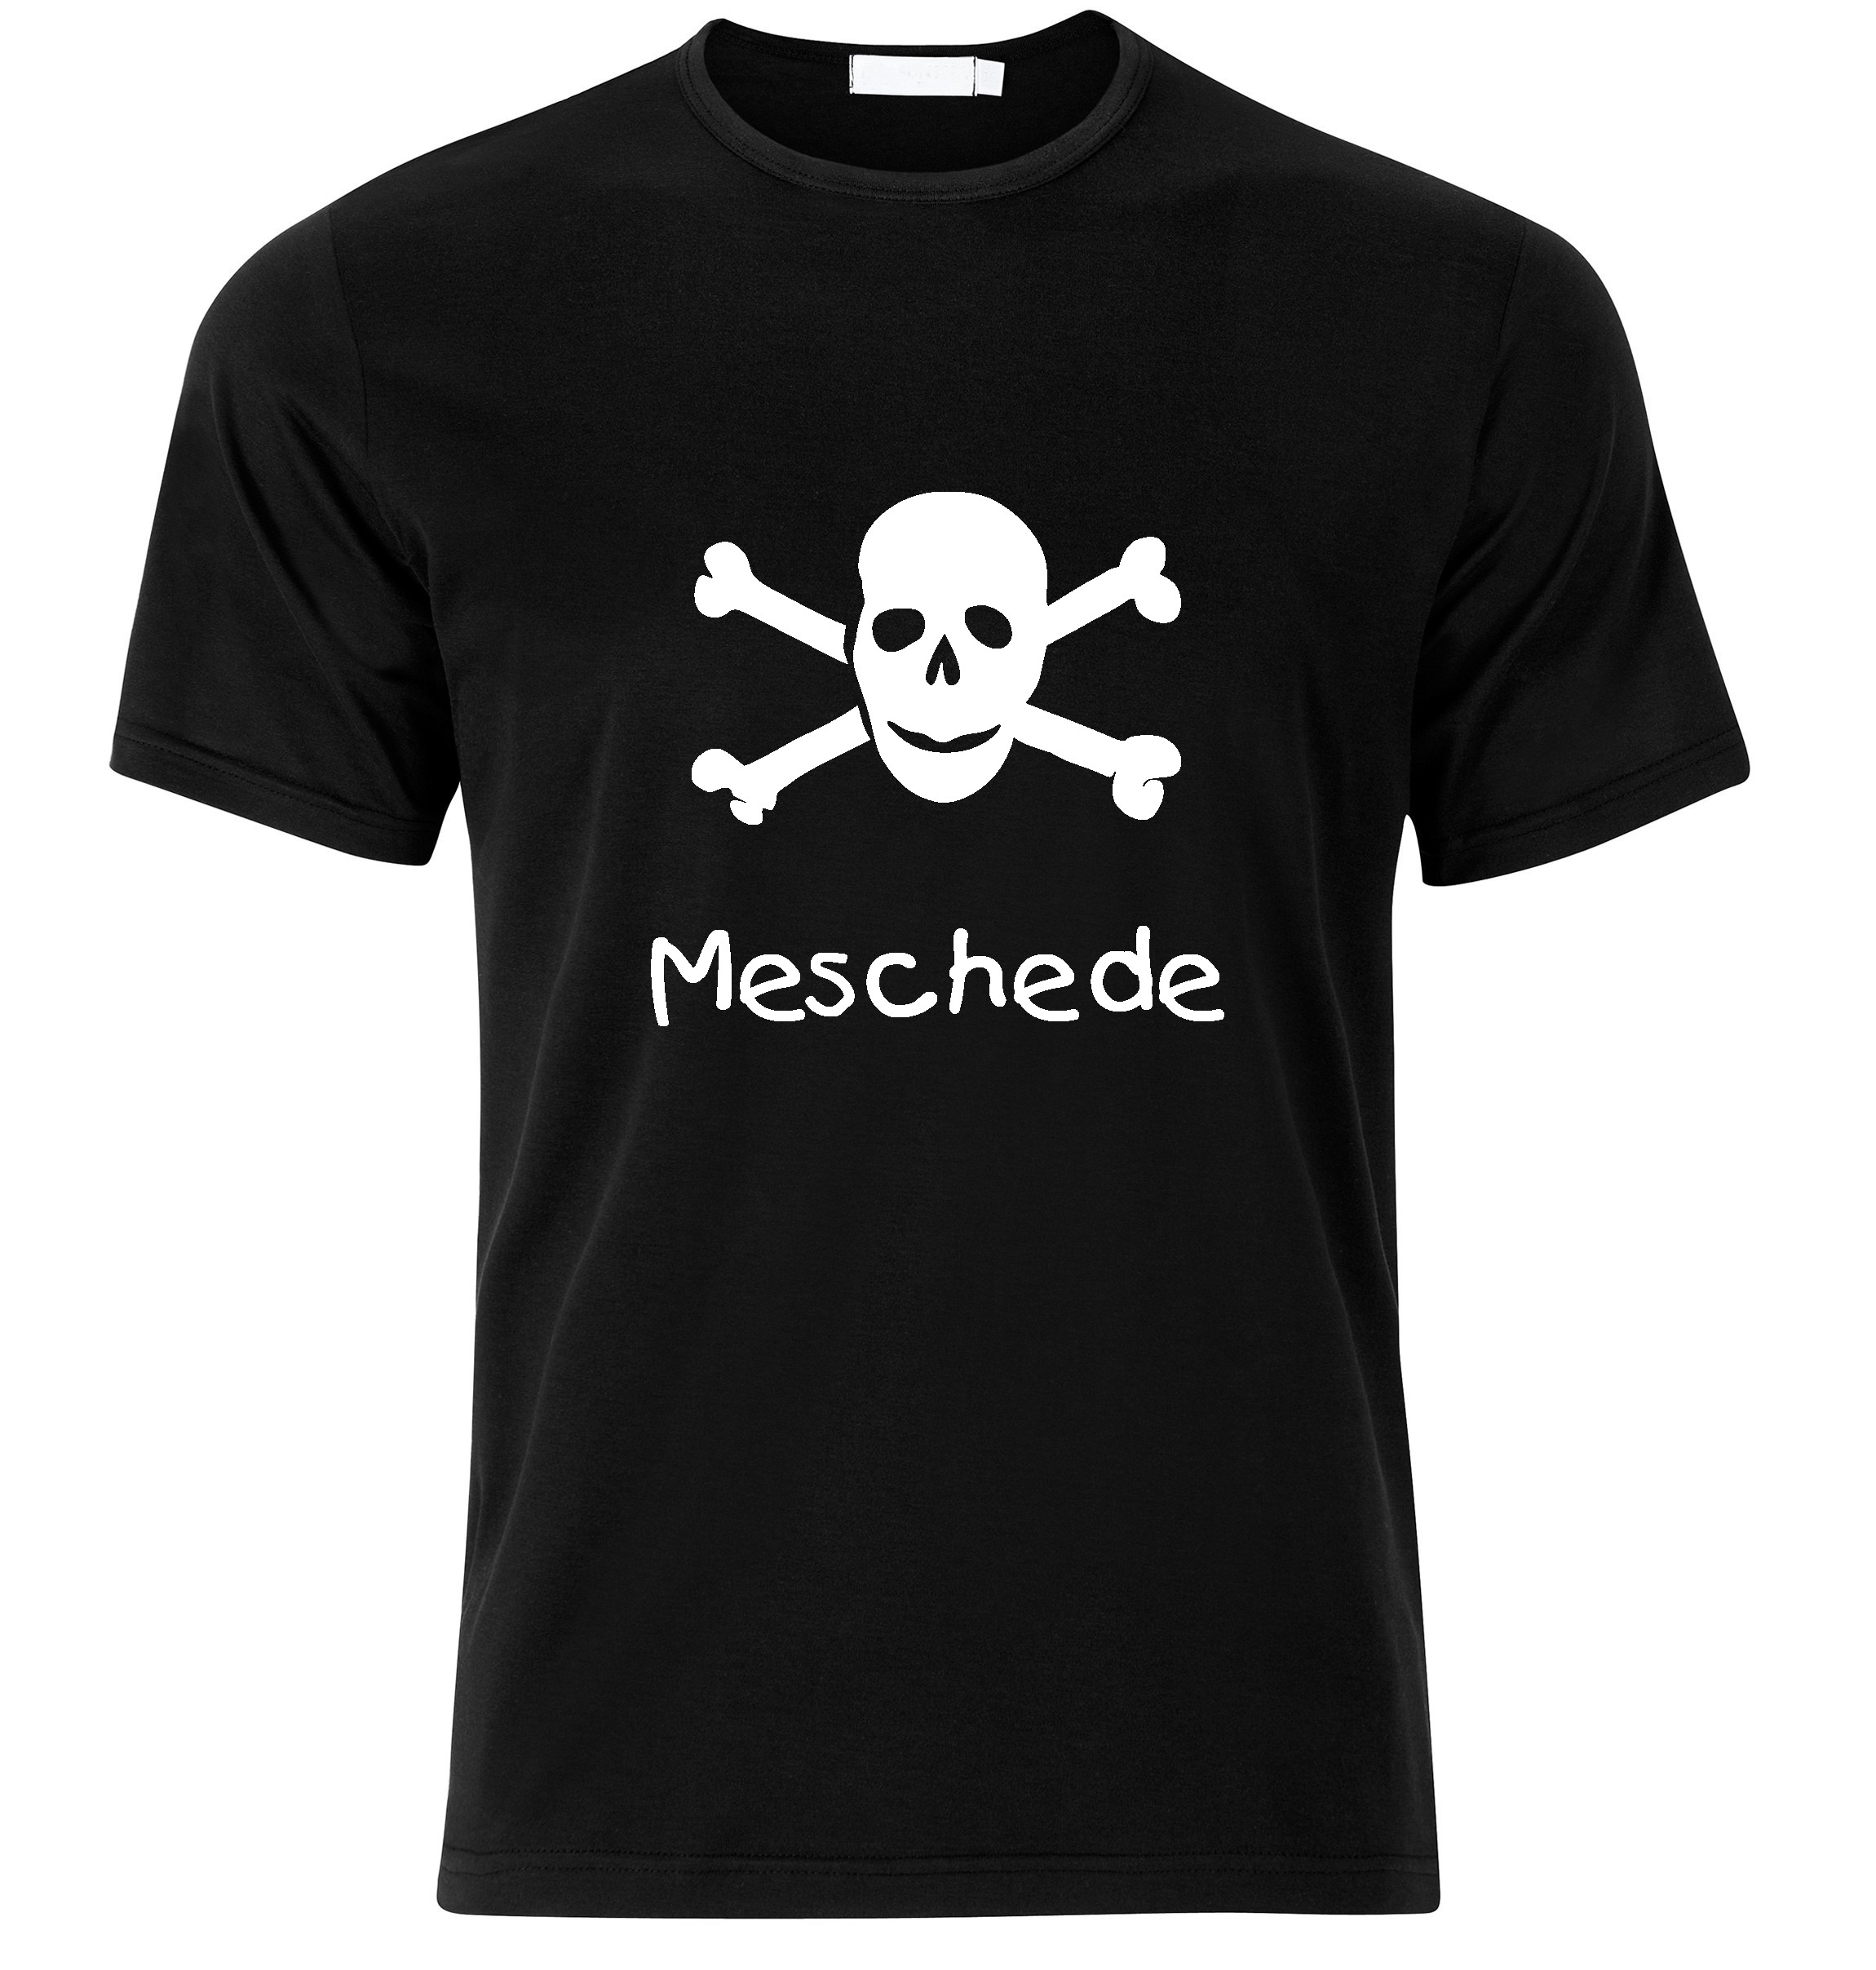 T-Shirt Meschede Jolly Roger, Totenkopf